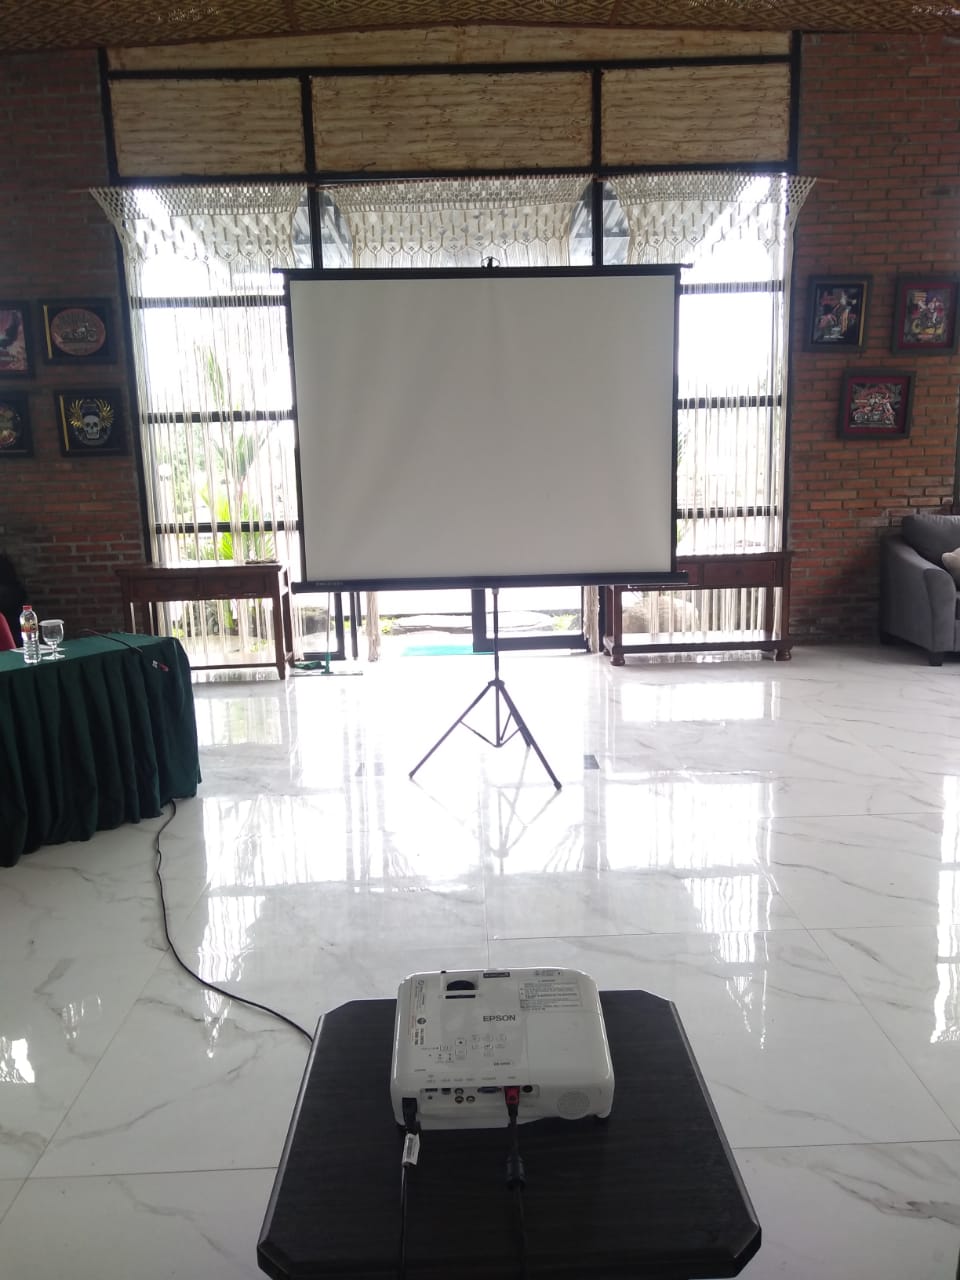 Harga Sewa Proyektor Murah Jogja Dekat Universitas Widya Mataram Yogyakarta (UWMY)